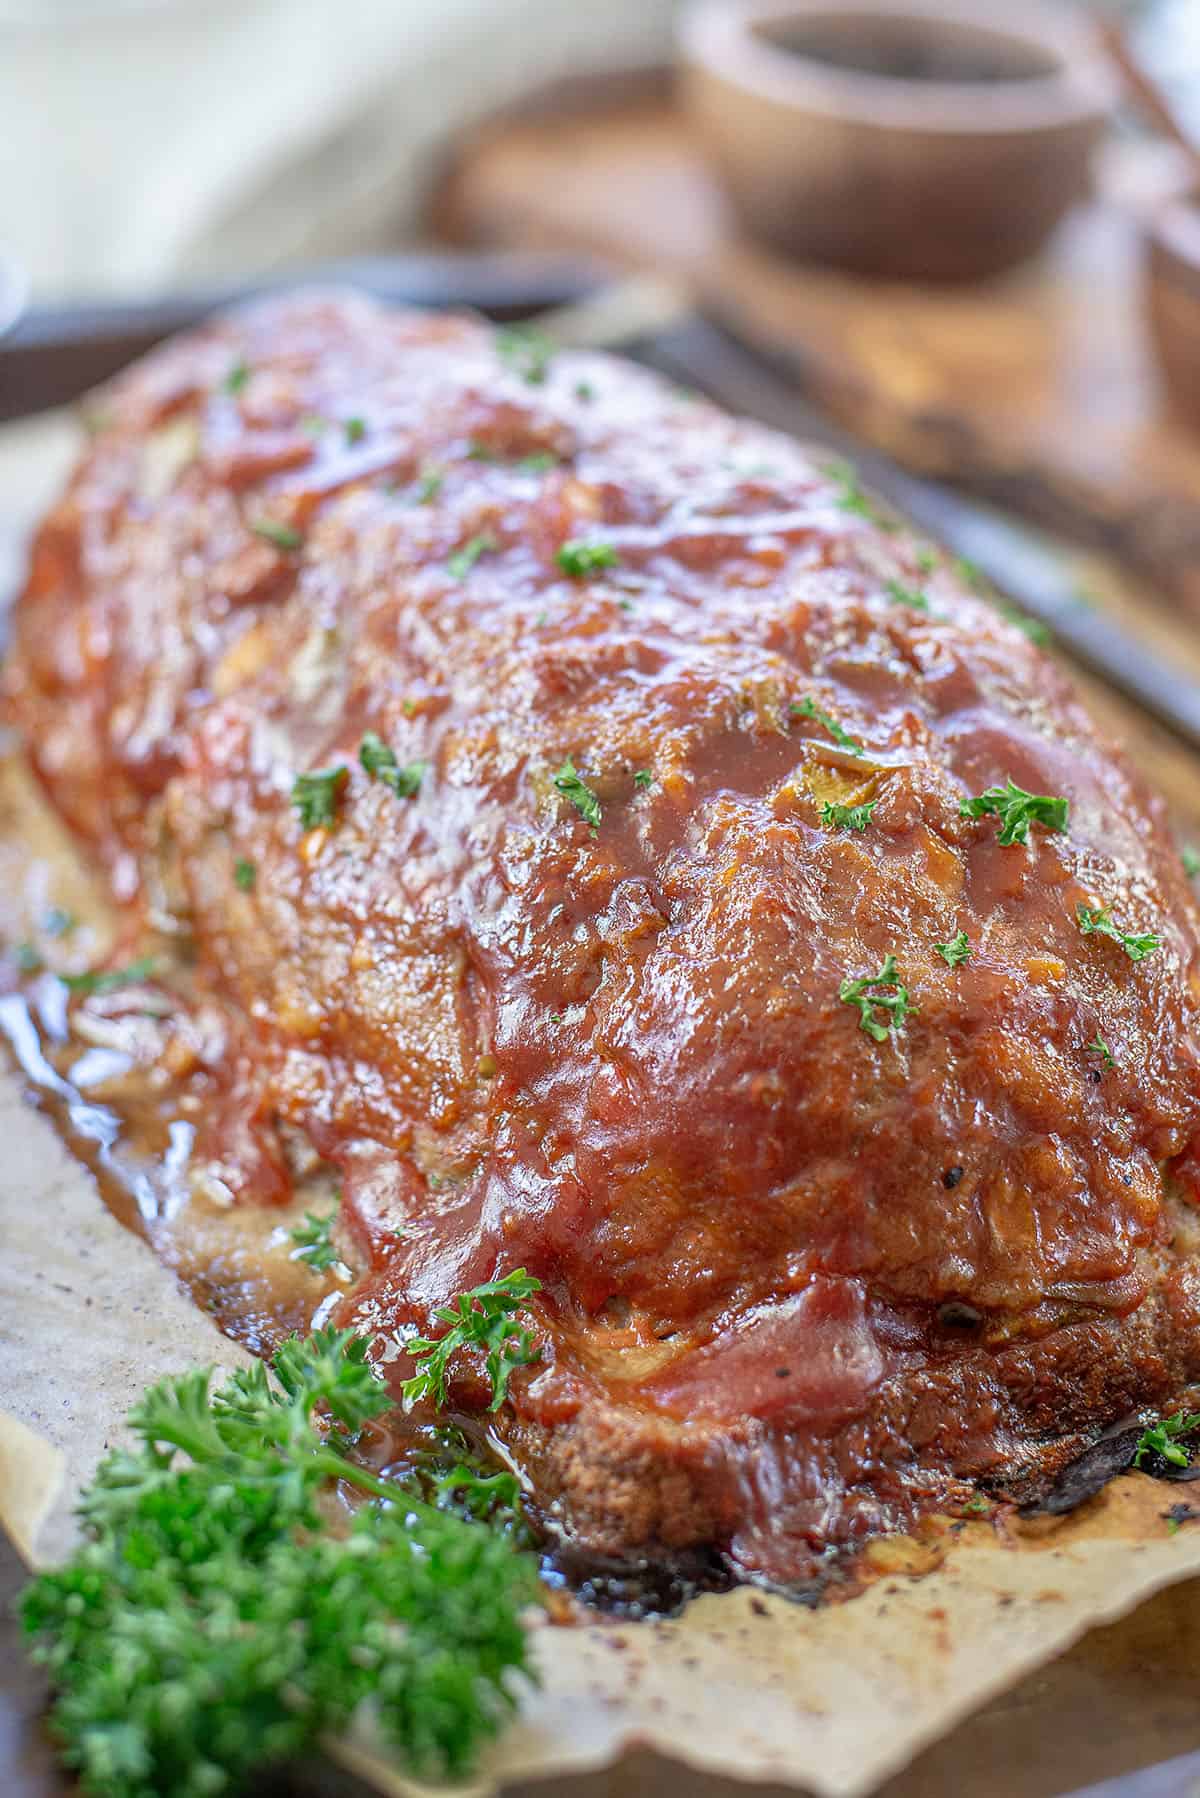 https://www.bunsinmyoven.com/wp-content/uploads/2016/01/turkey-meatloaf-recipe-1.jpg